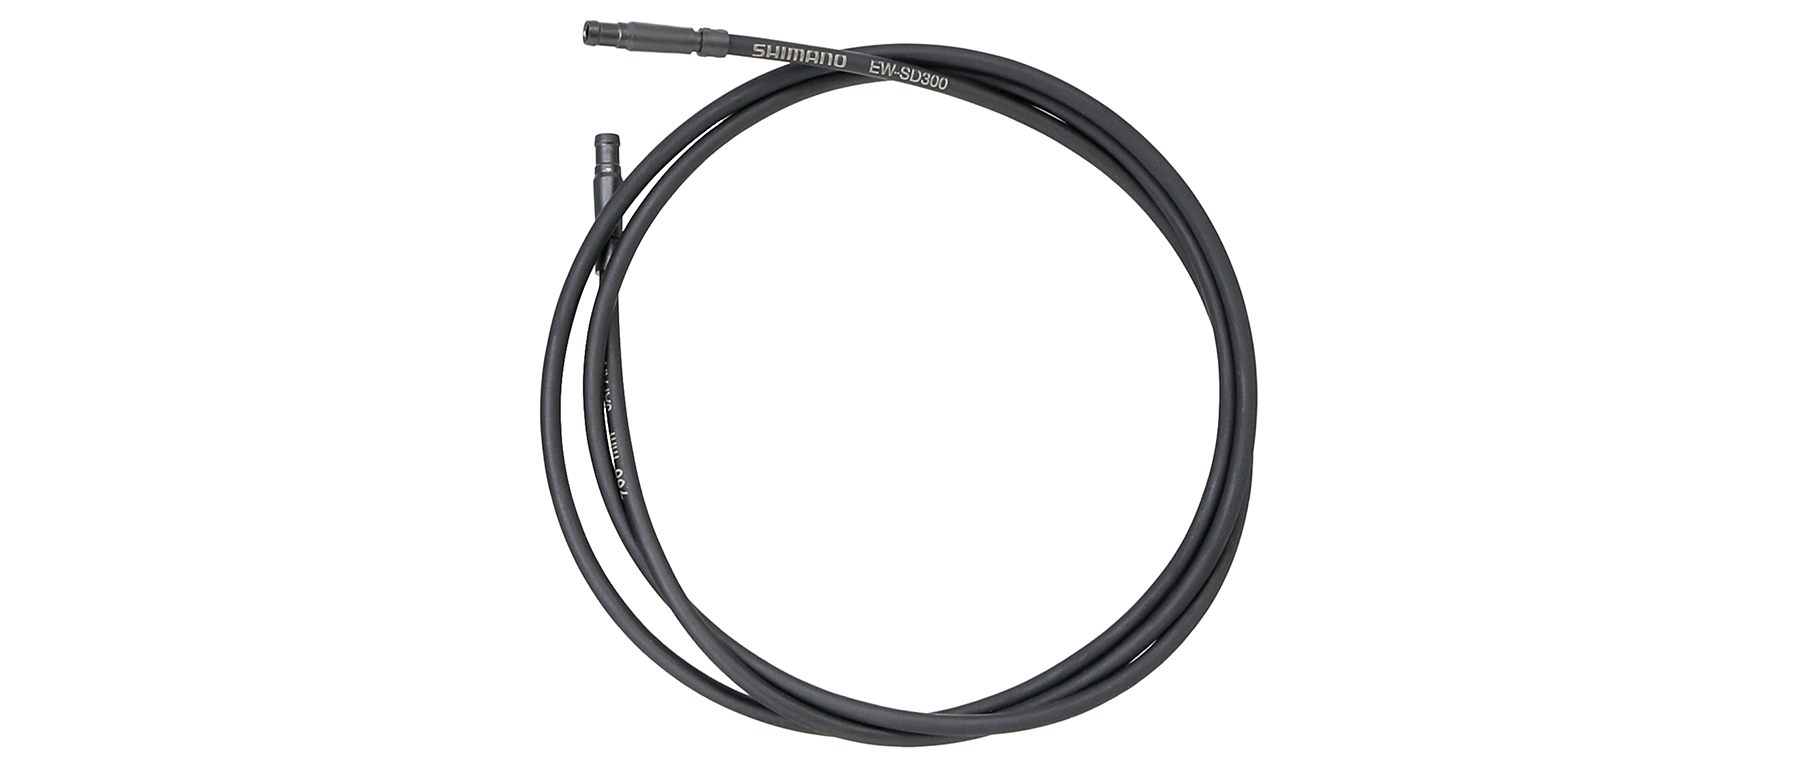 35 mm Shimano Non-Series Di2 EW-CB300-L E-tube Di2 Cord band for SD300 cable